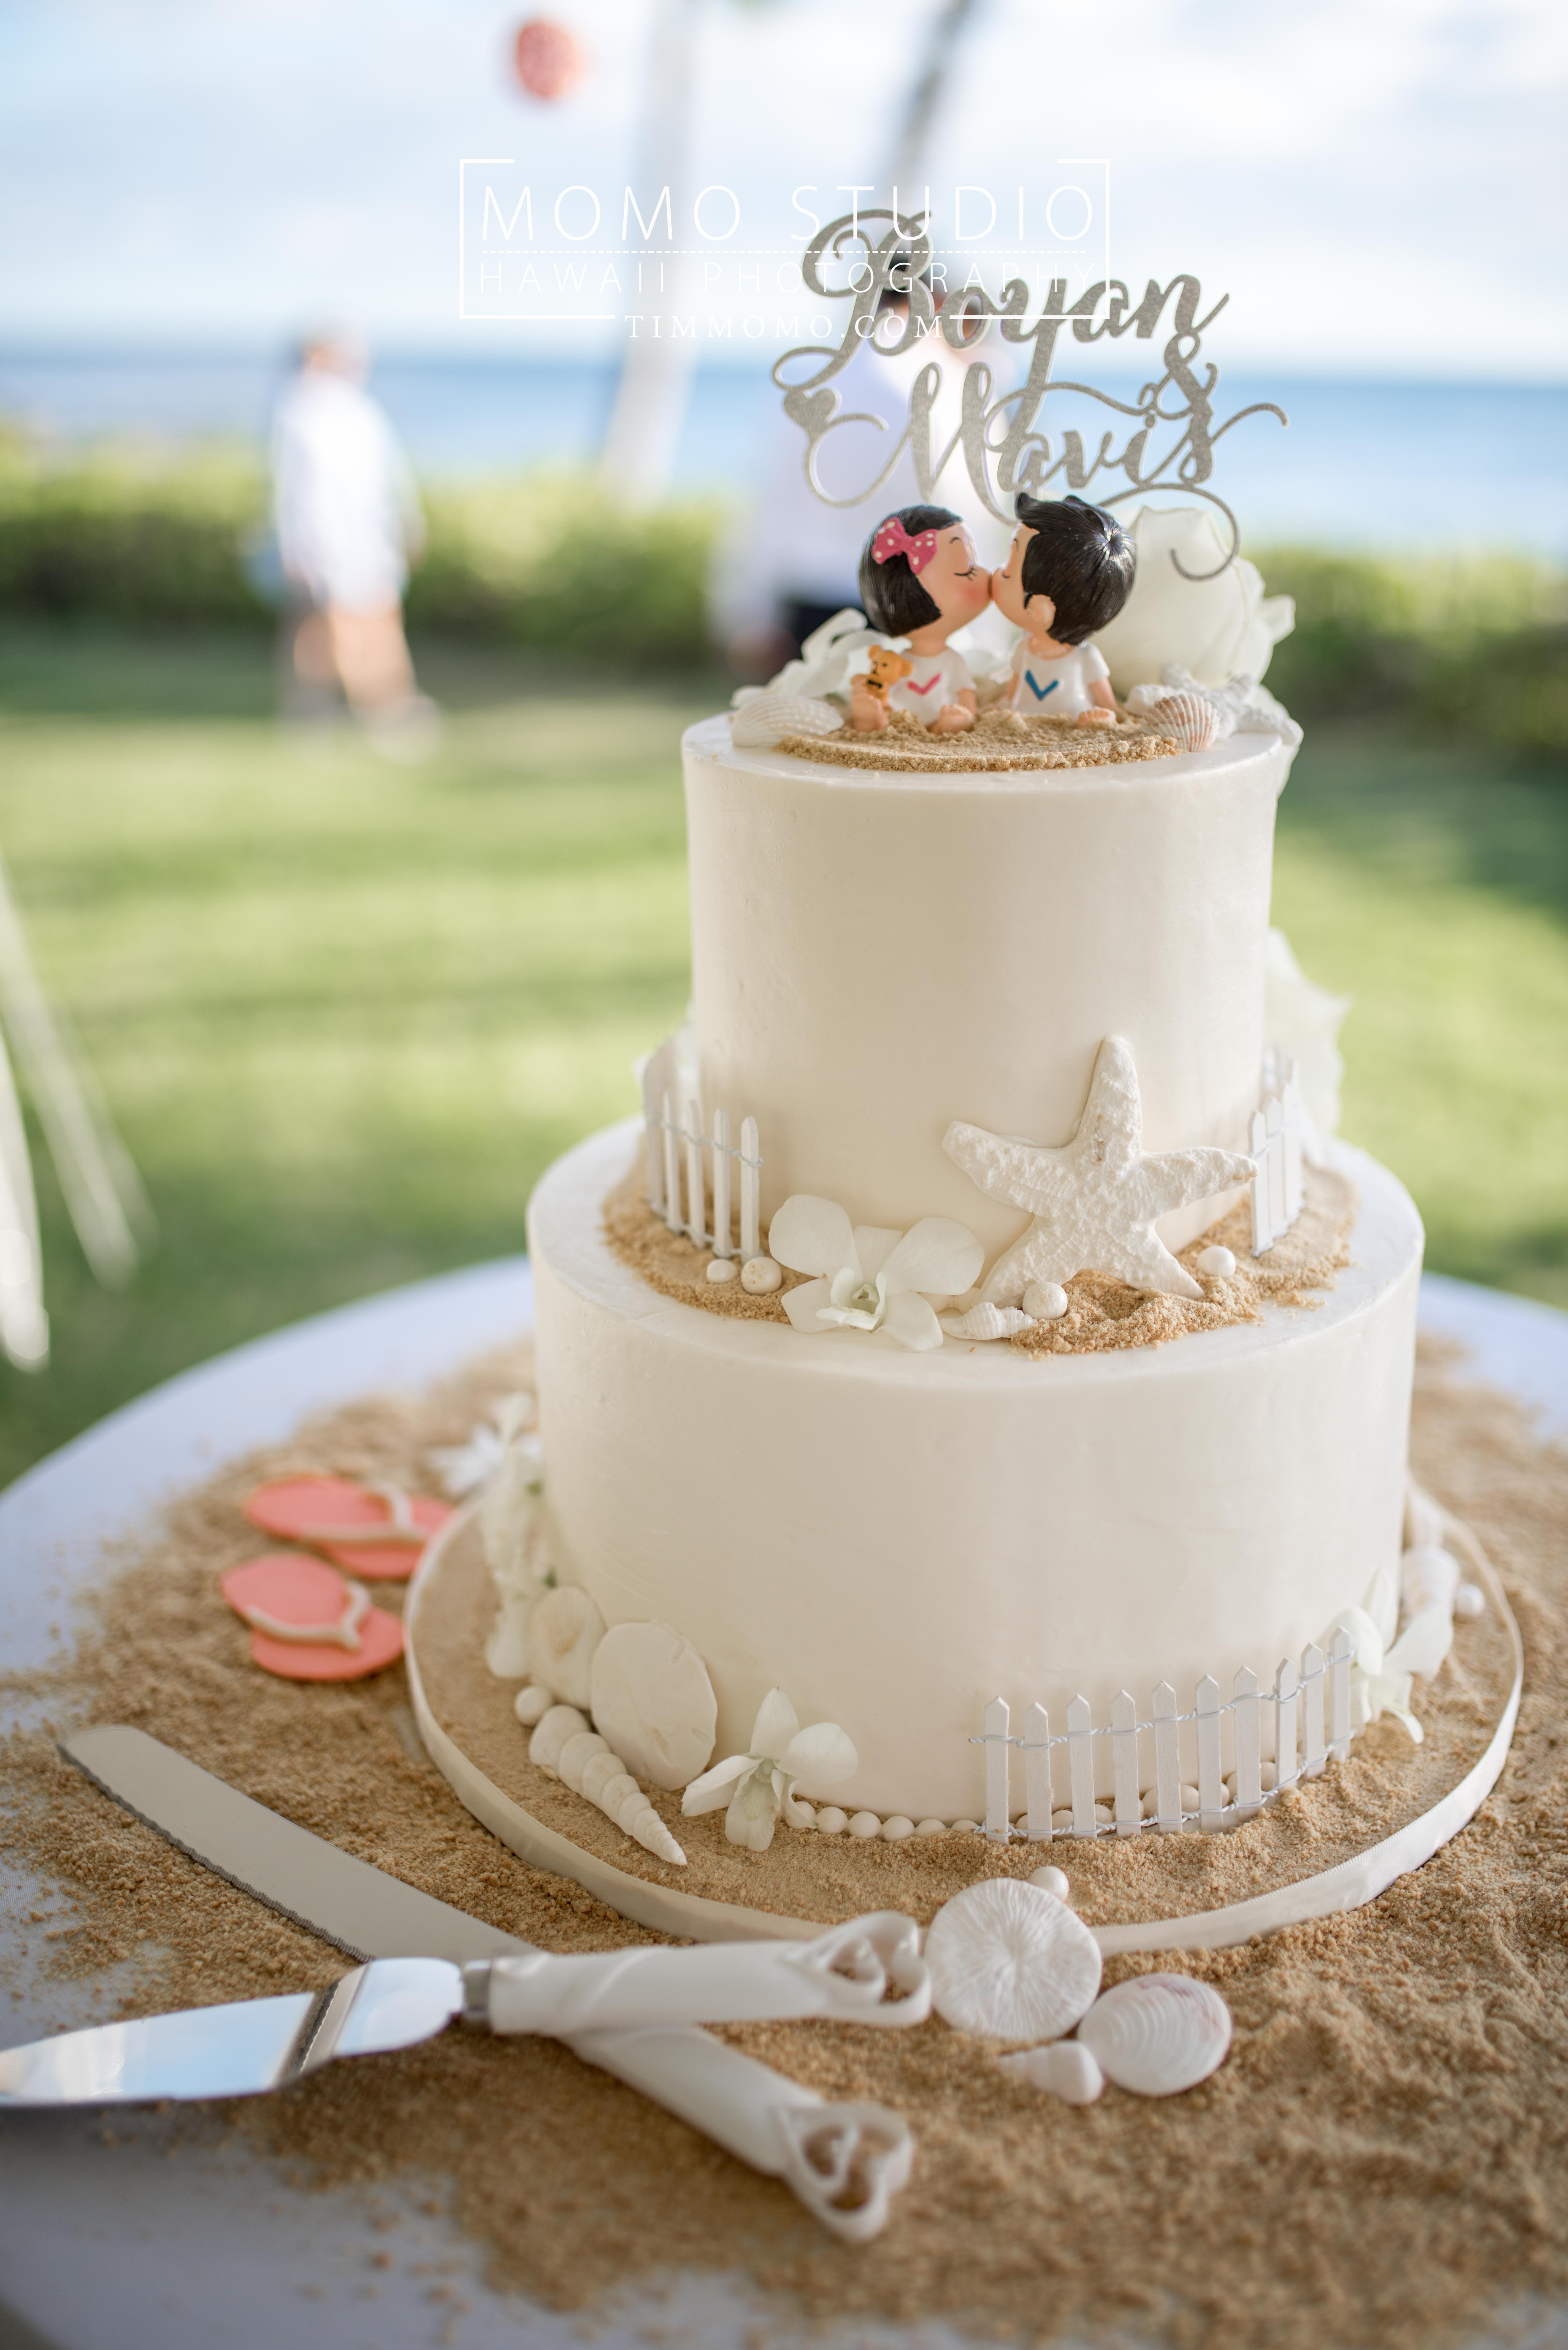 婚礼蛋糕定制多少钱？适合结婚的婚礼蛋糕图片大全唯美_99女性网